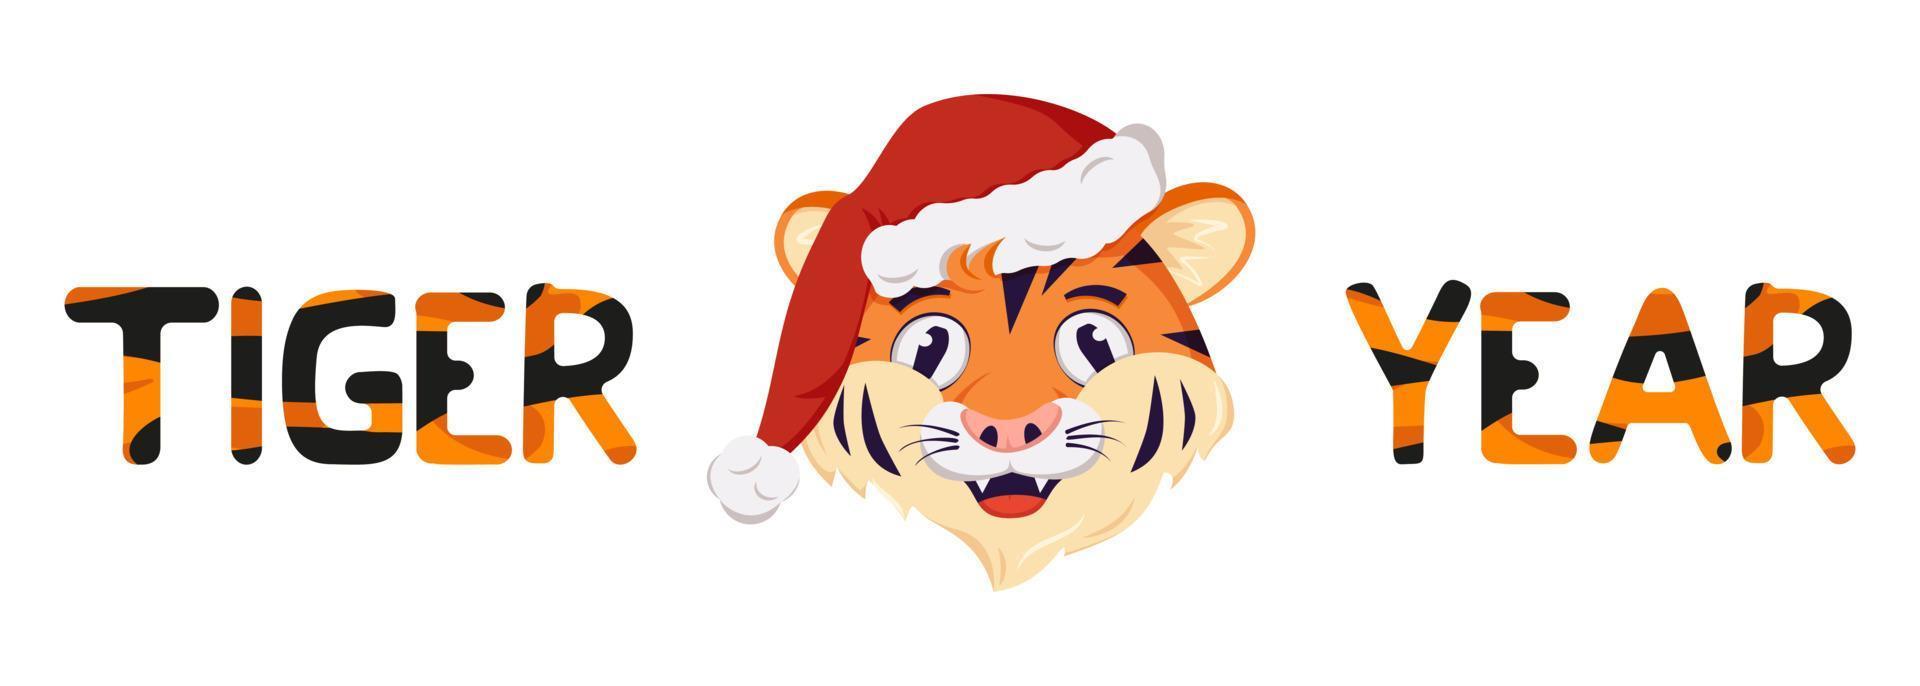 tigre feliz, símbolo do ano novo com chapéu de Papai Noel vermelho de Natal. animais selvagens da África, rosto com emoção alegre, decoração de feriado com letras laranja listradas vetor